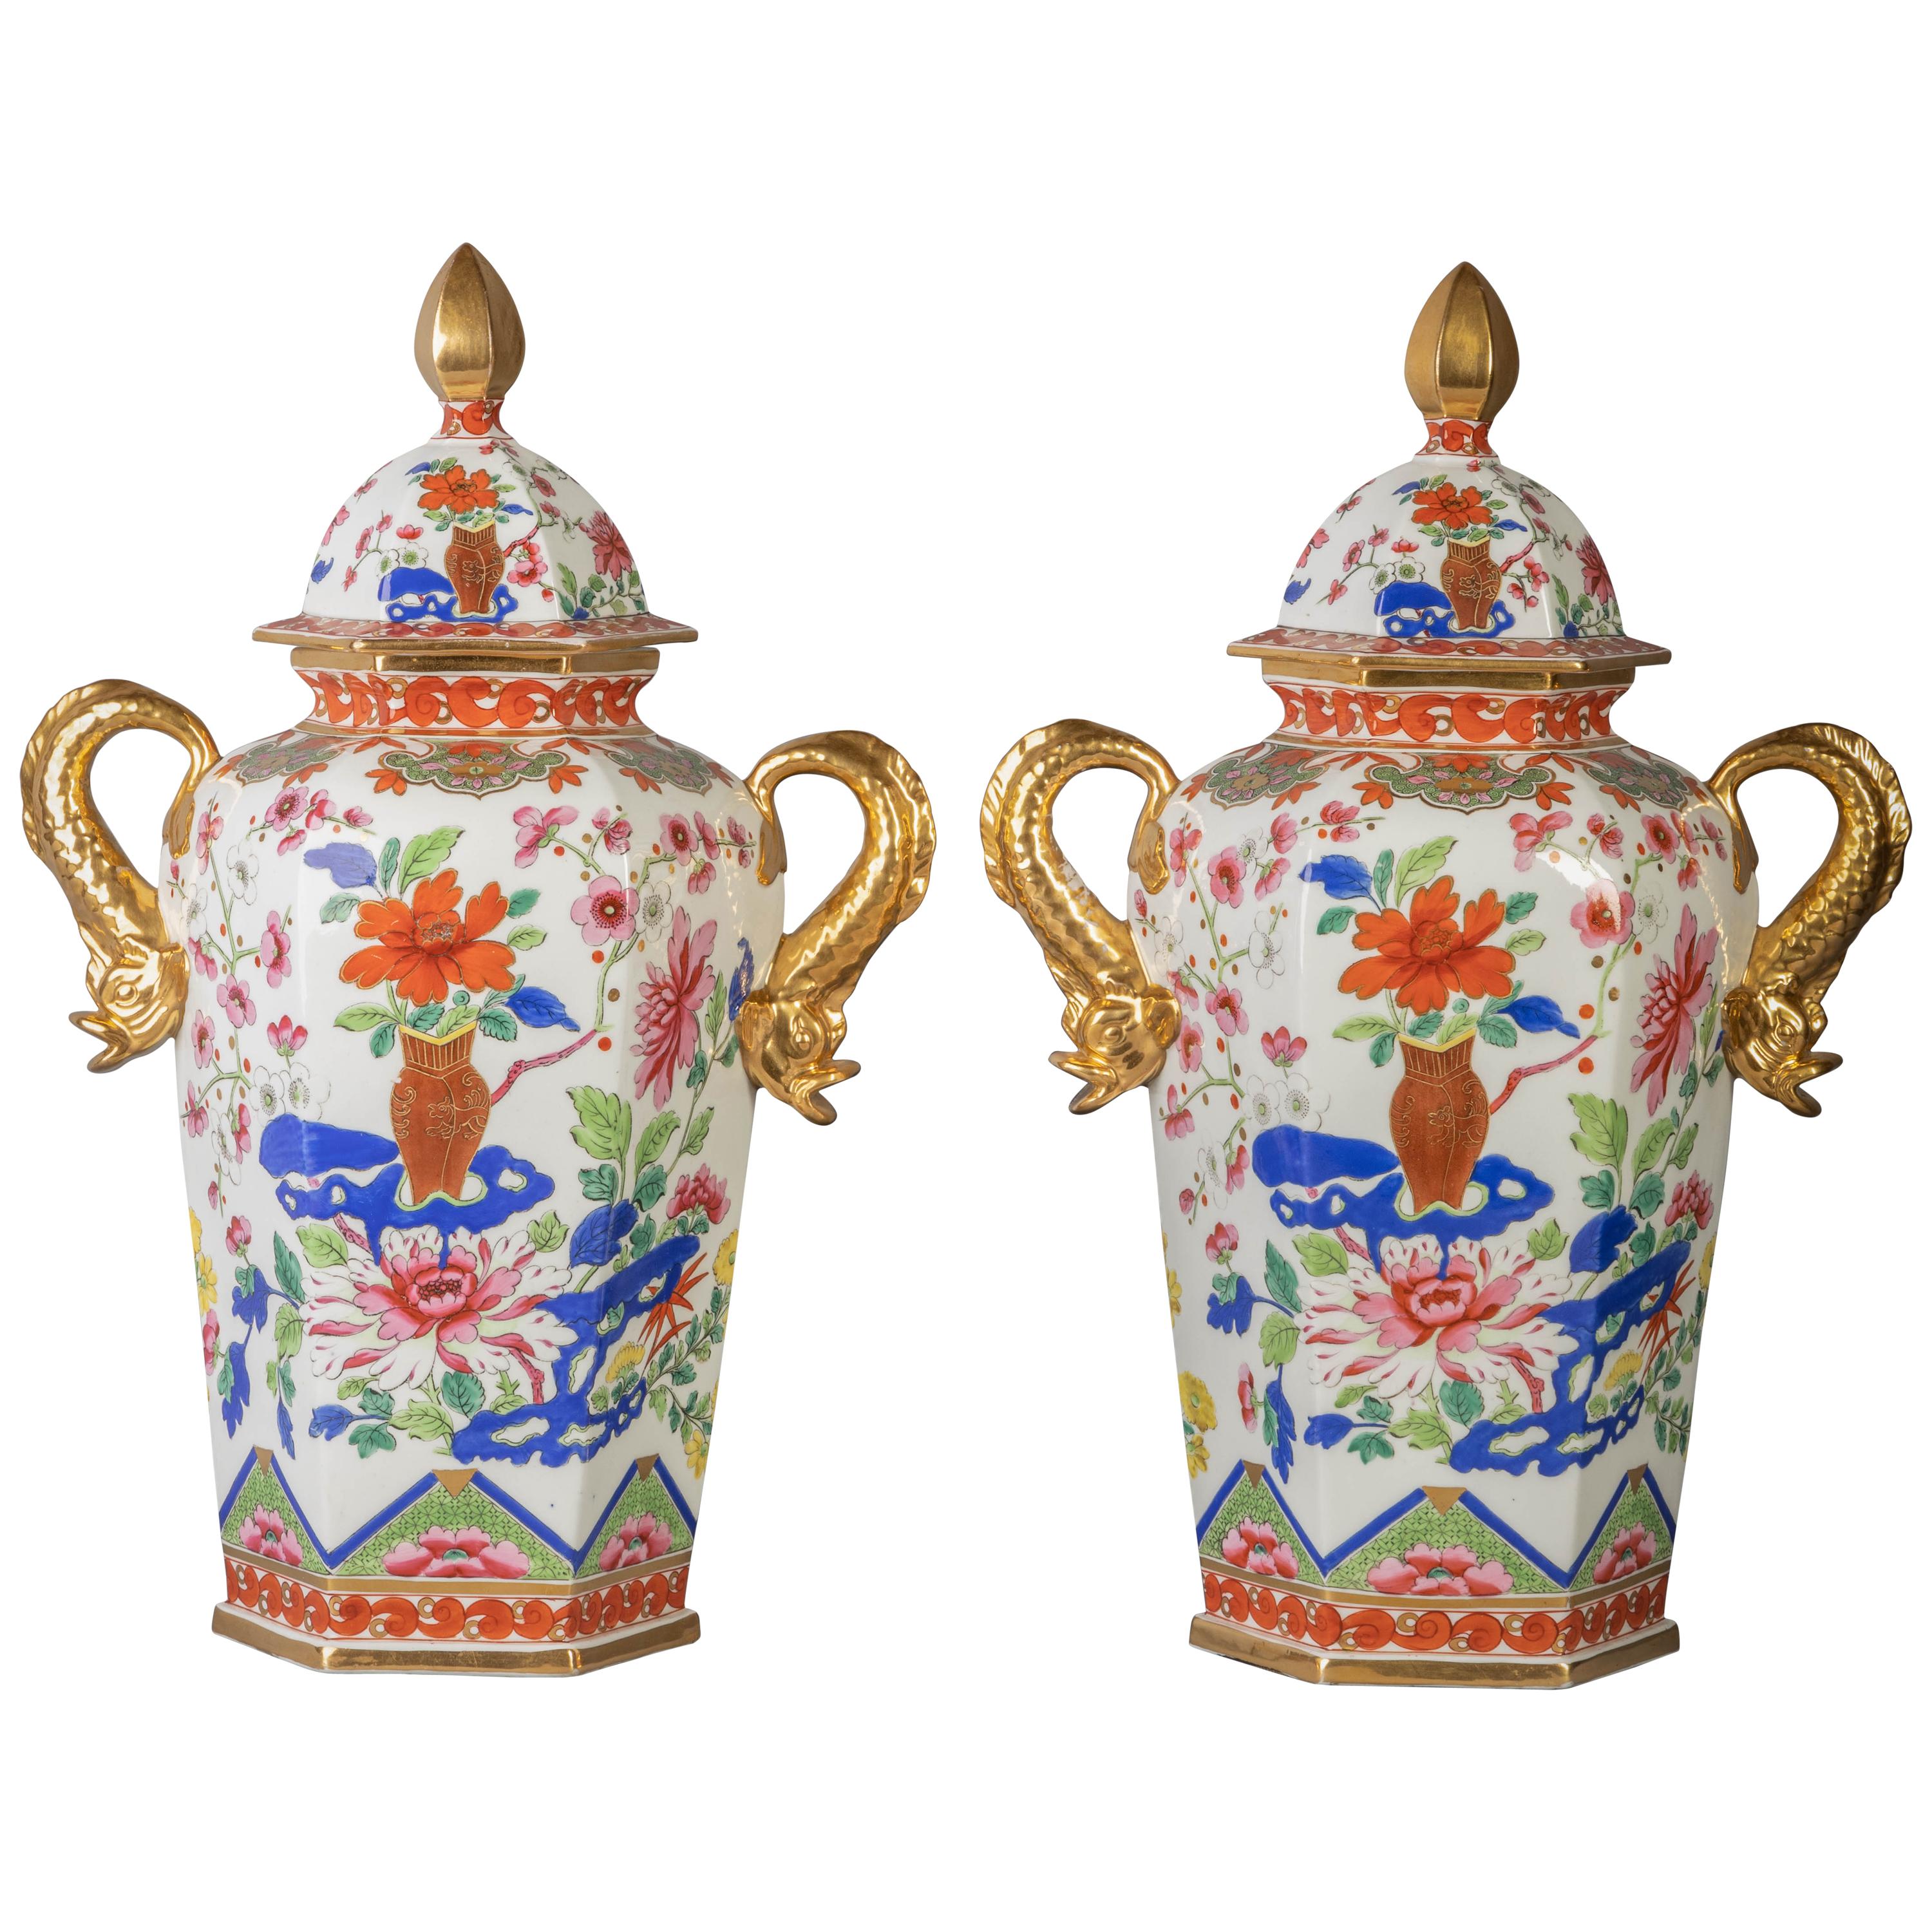 Pair of English Ironstone Imari Hexagonal Covered Vases, circa 1815